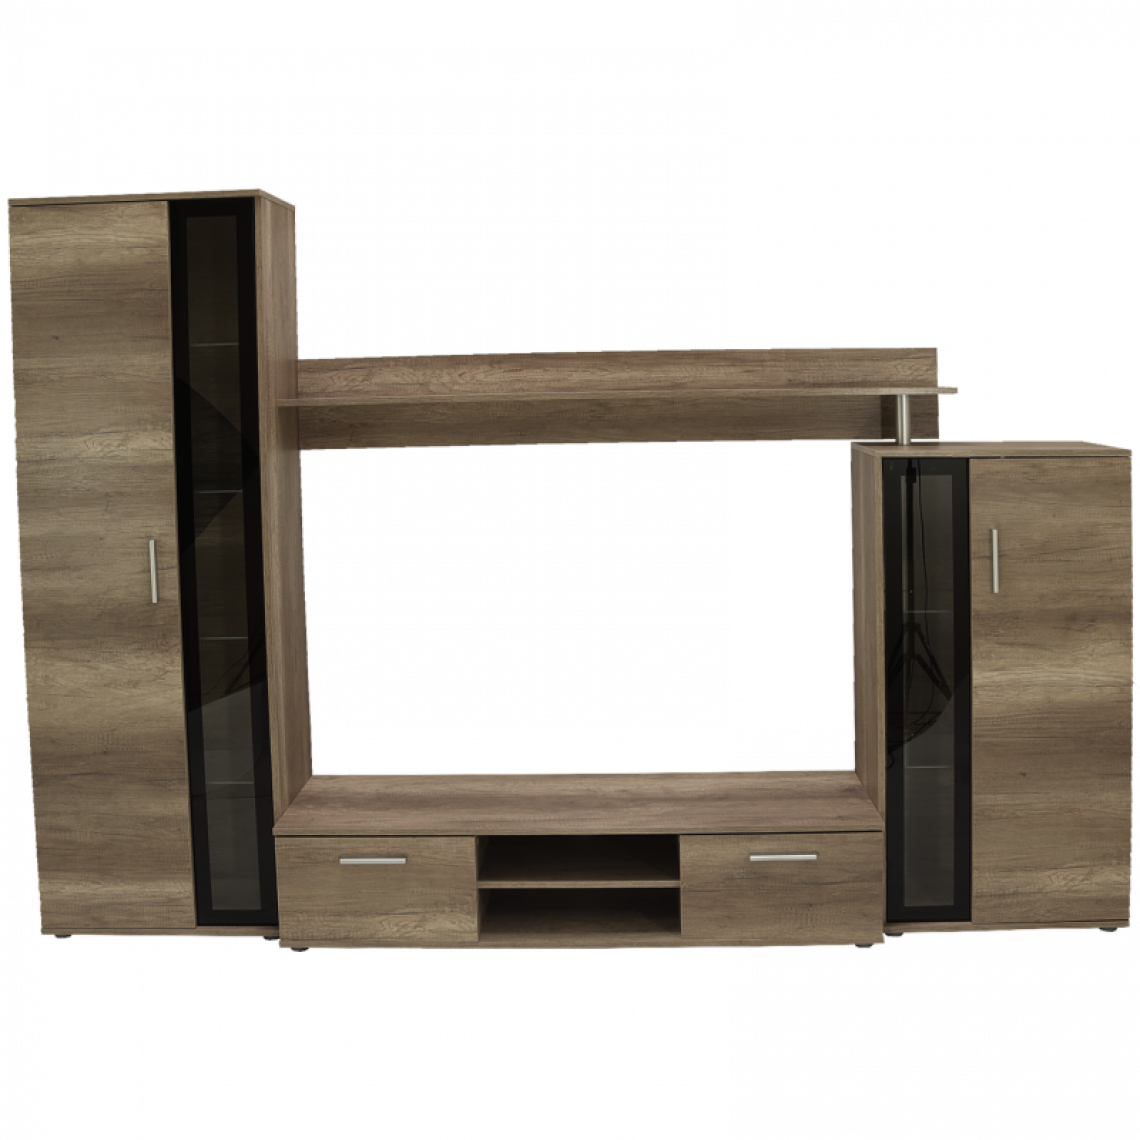 Hucoco - EMINO - Ensemble meubles TV 4 éléments - Mur TV avec rangements - Rangement TV - Armoires vitrées - Aspect bois - Gris/Chêne - Meubles TV, Hi-Fi